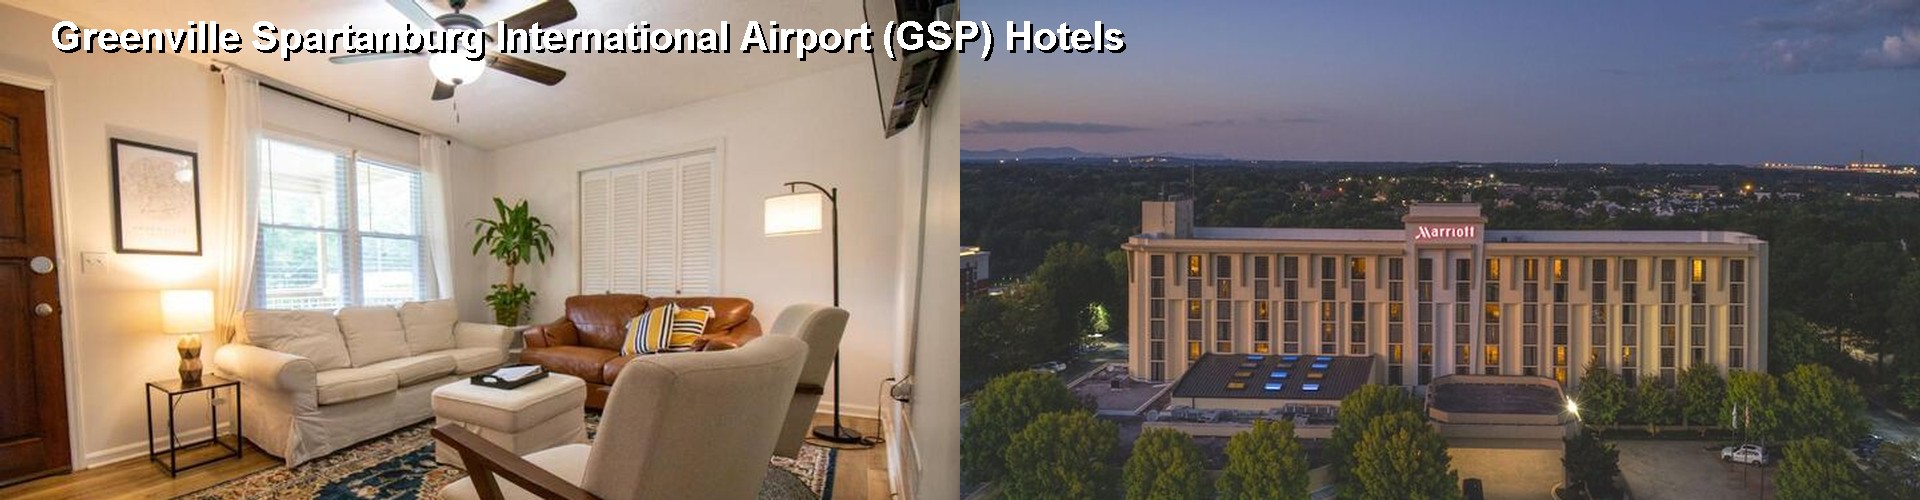 5 Best Hotels near Greenville Spartanburg International Airport (GSP)